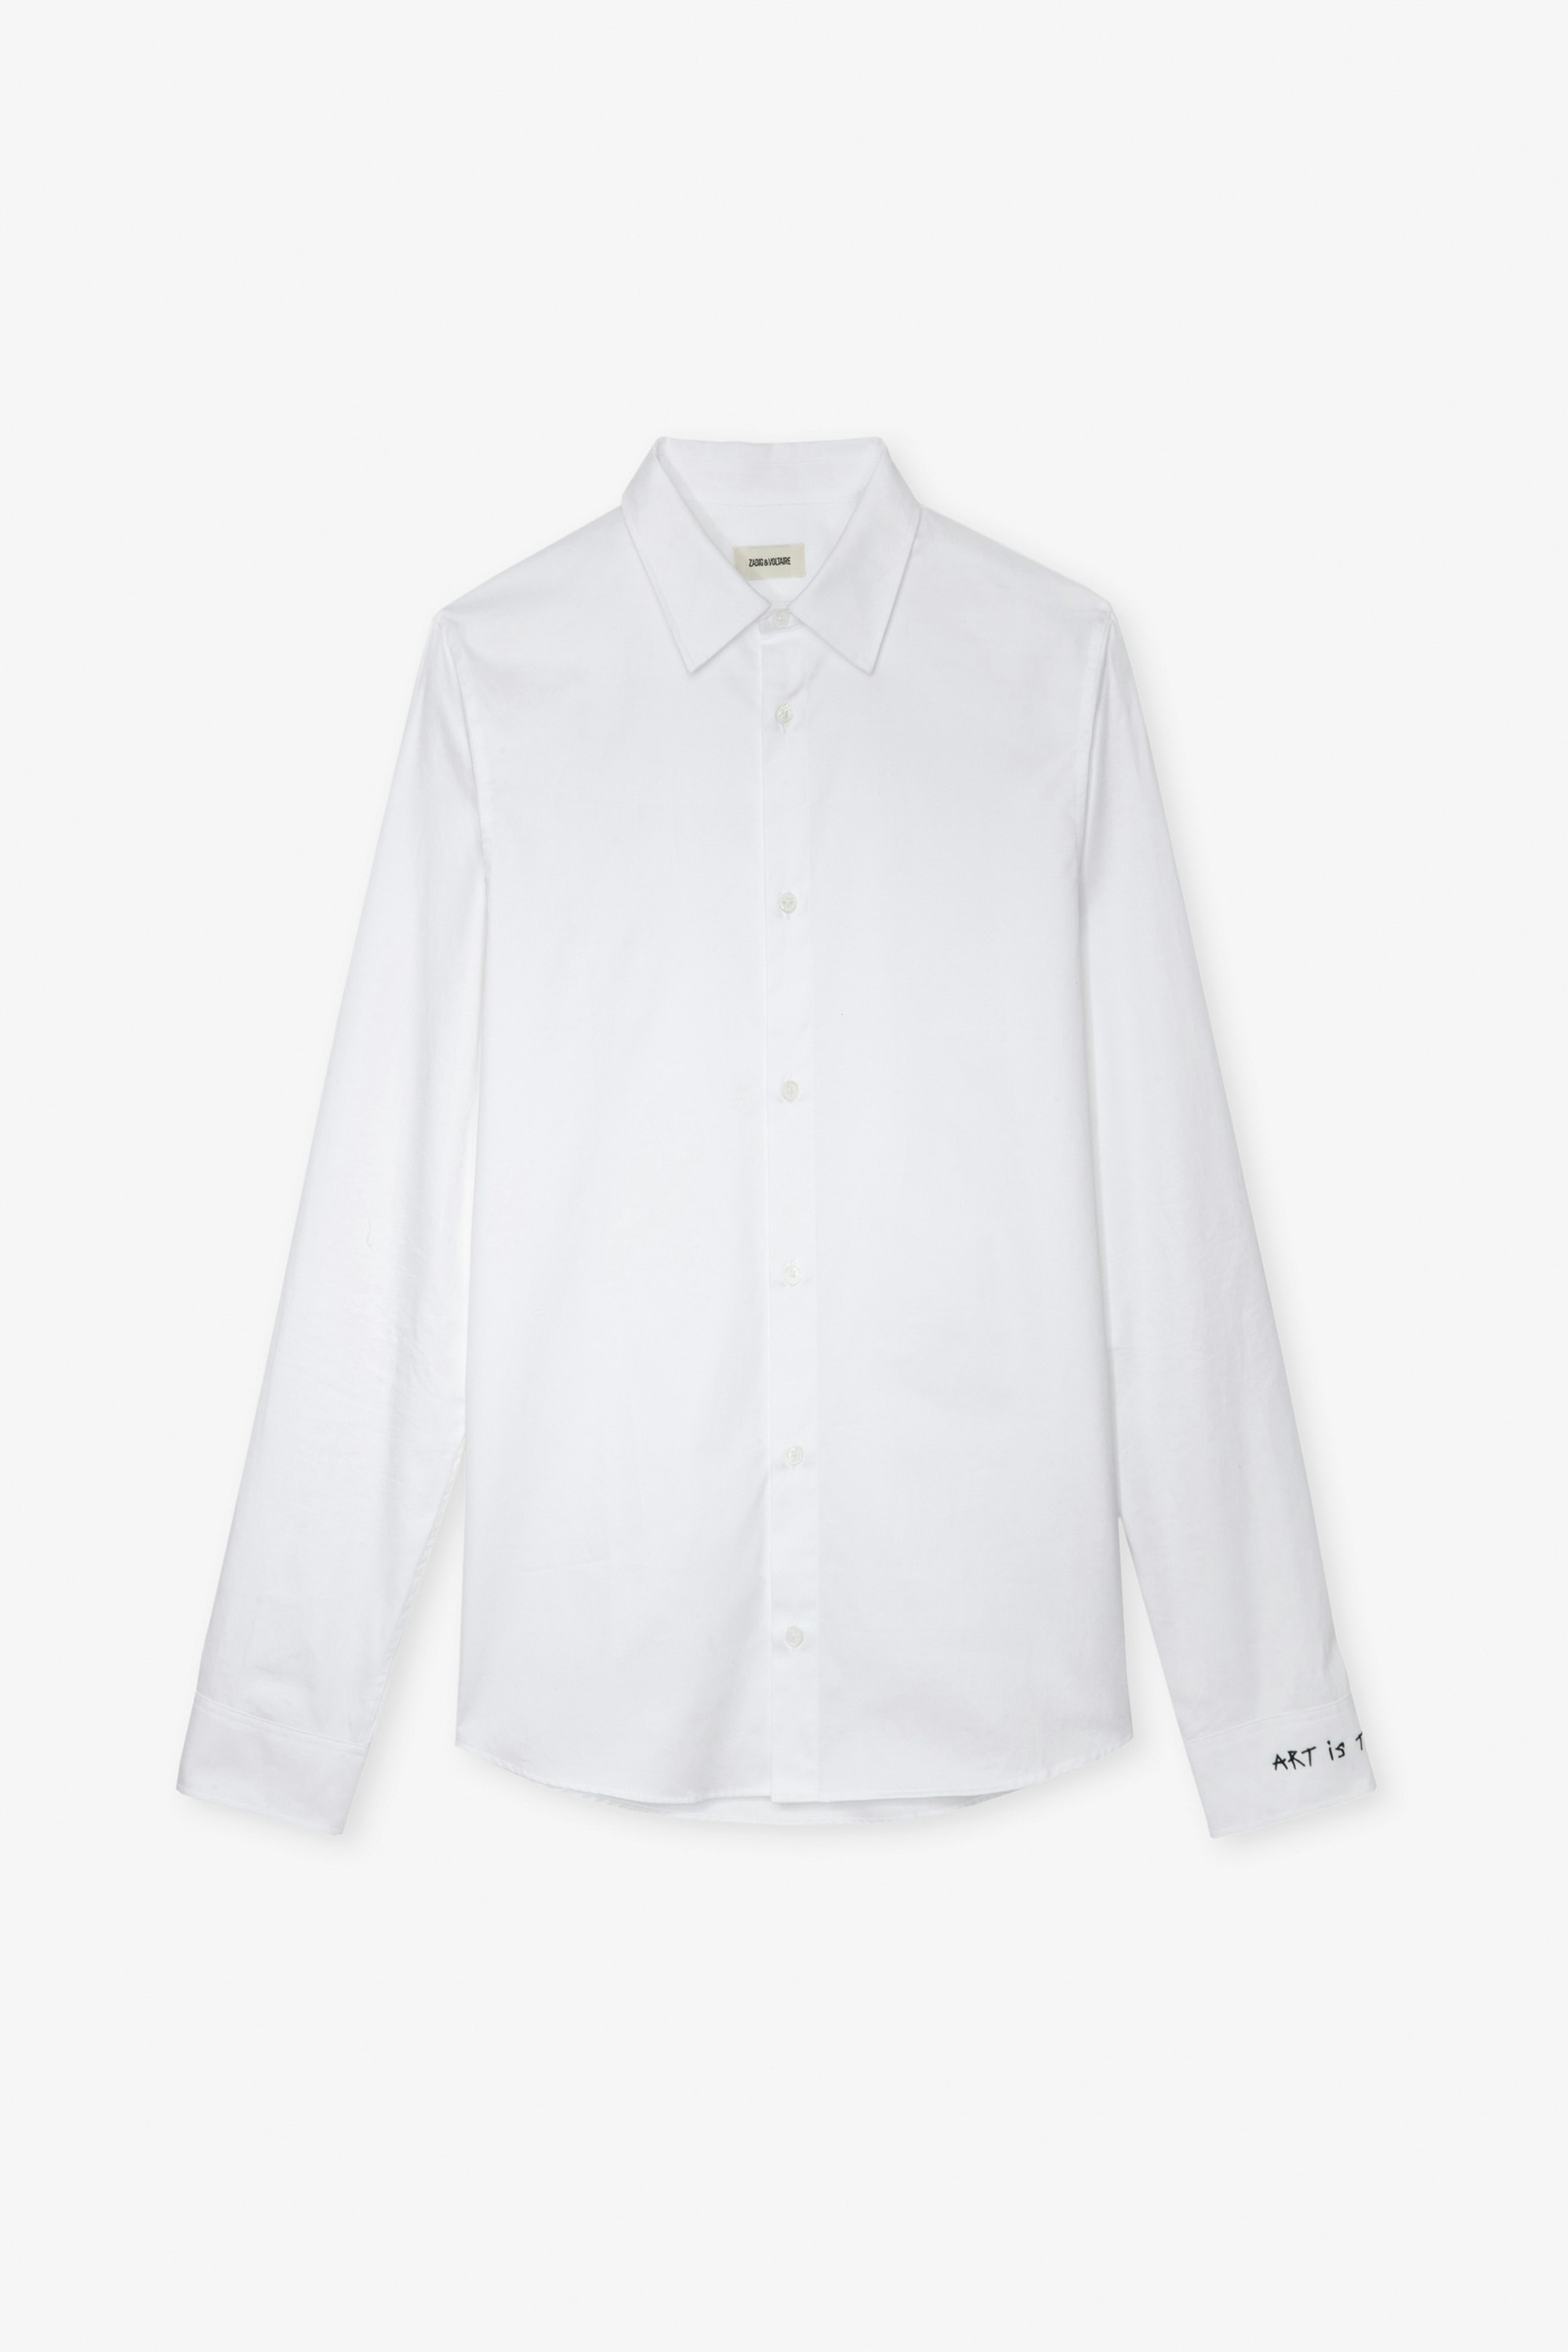 Hemd Sydney - Weißes Unisex-Hemd aus Baumwolle mit Stickerei „Art Is Truth“ an der rechten Manschette.